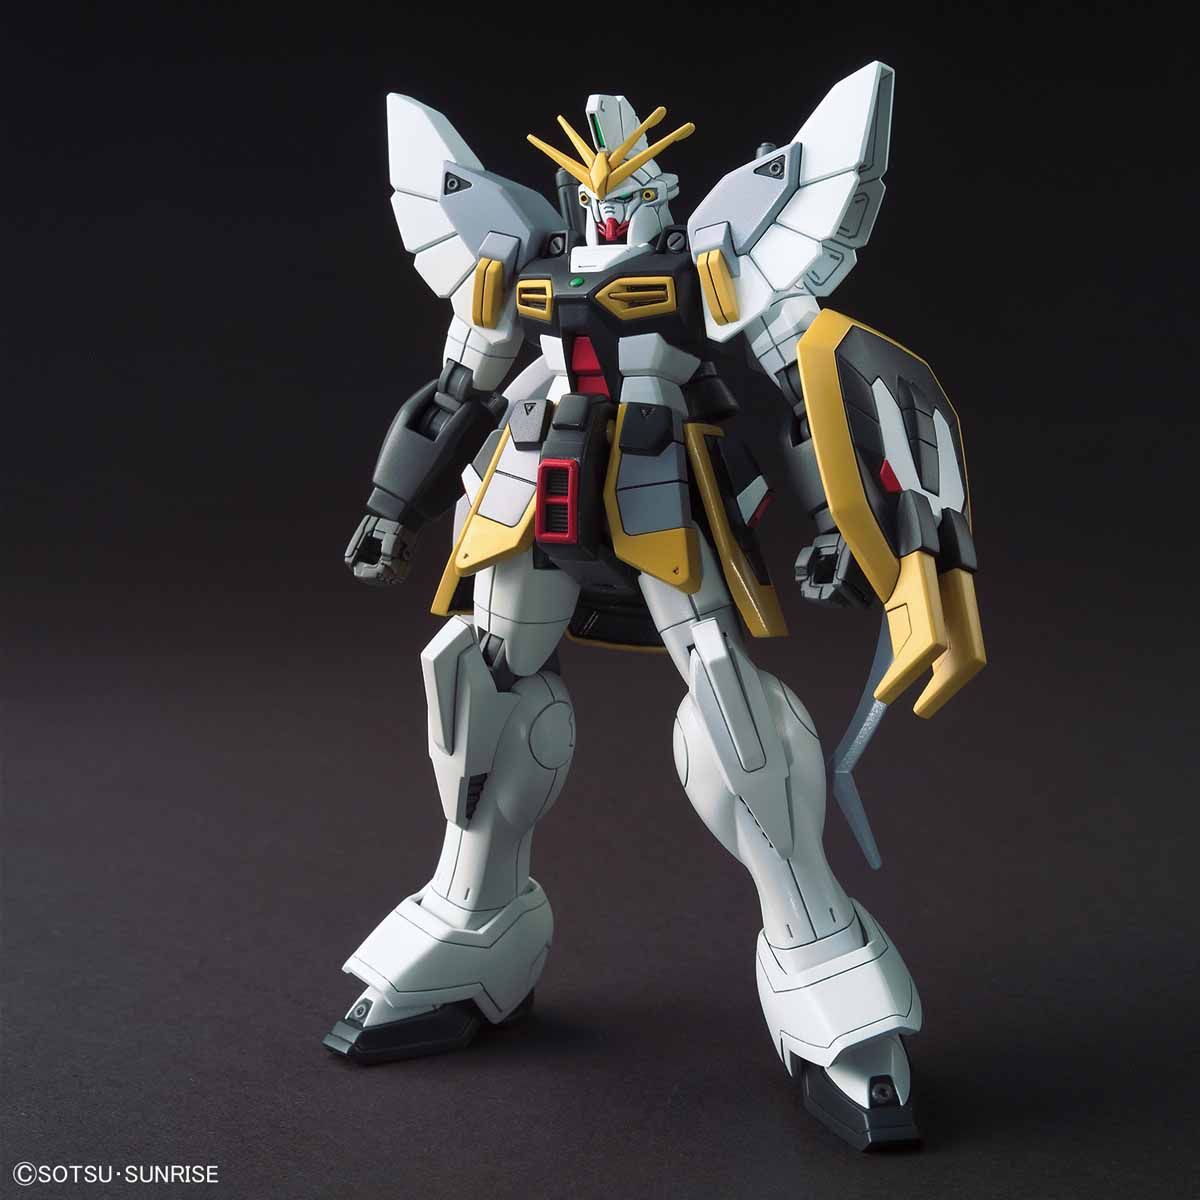 XXXG-01SR ガンダムサンドロック [Gundam Sandrock]